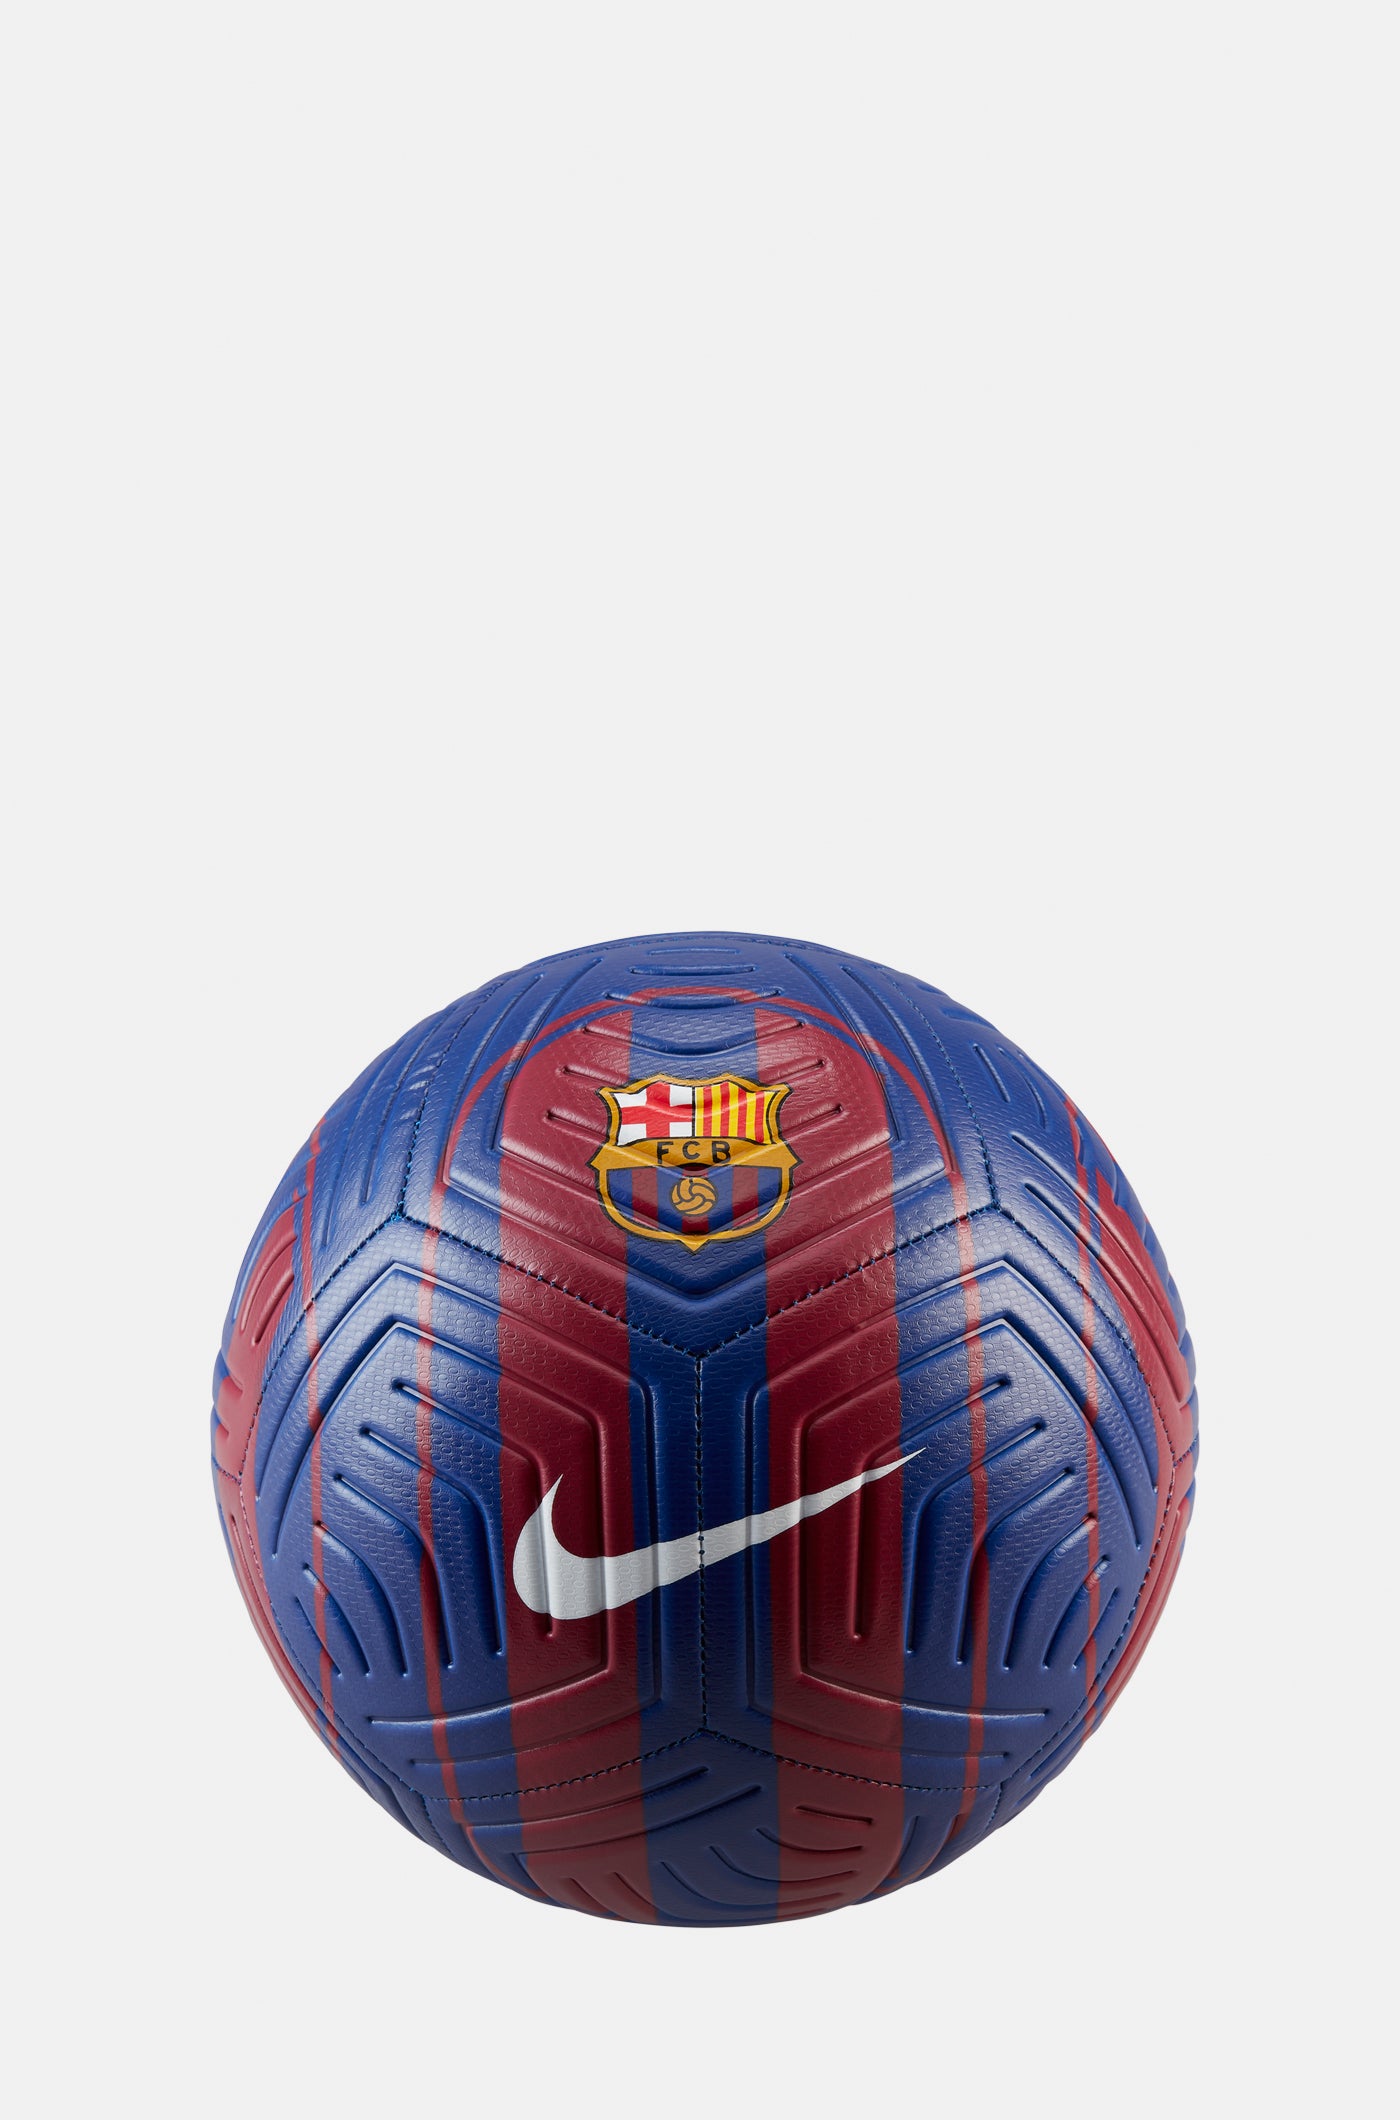 Regalos y Accesorios – Barça Official Store Spotify Camp Nou